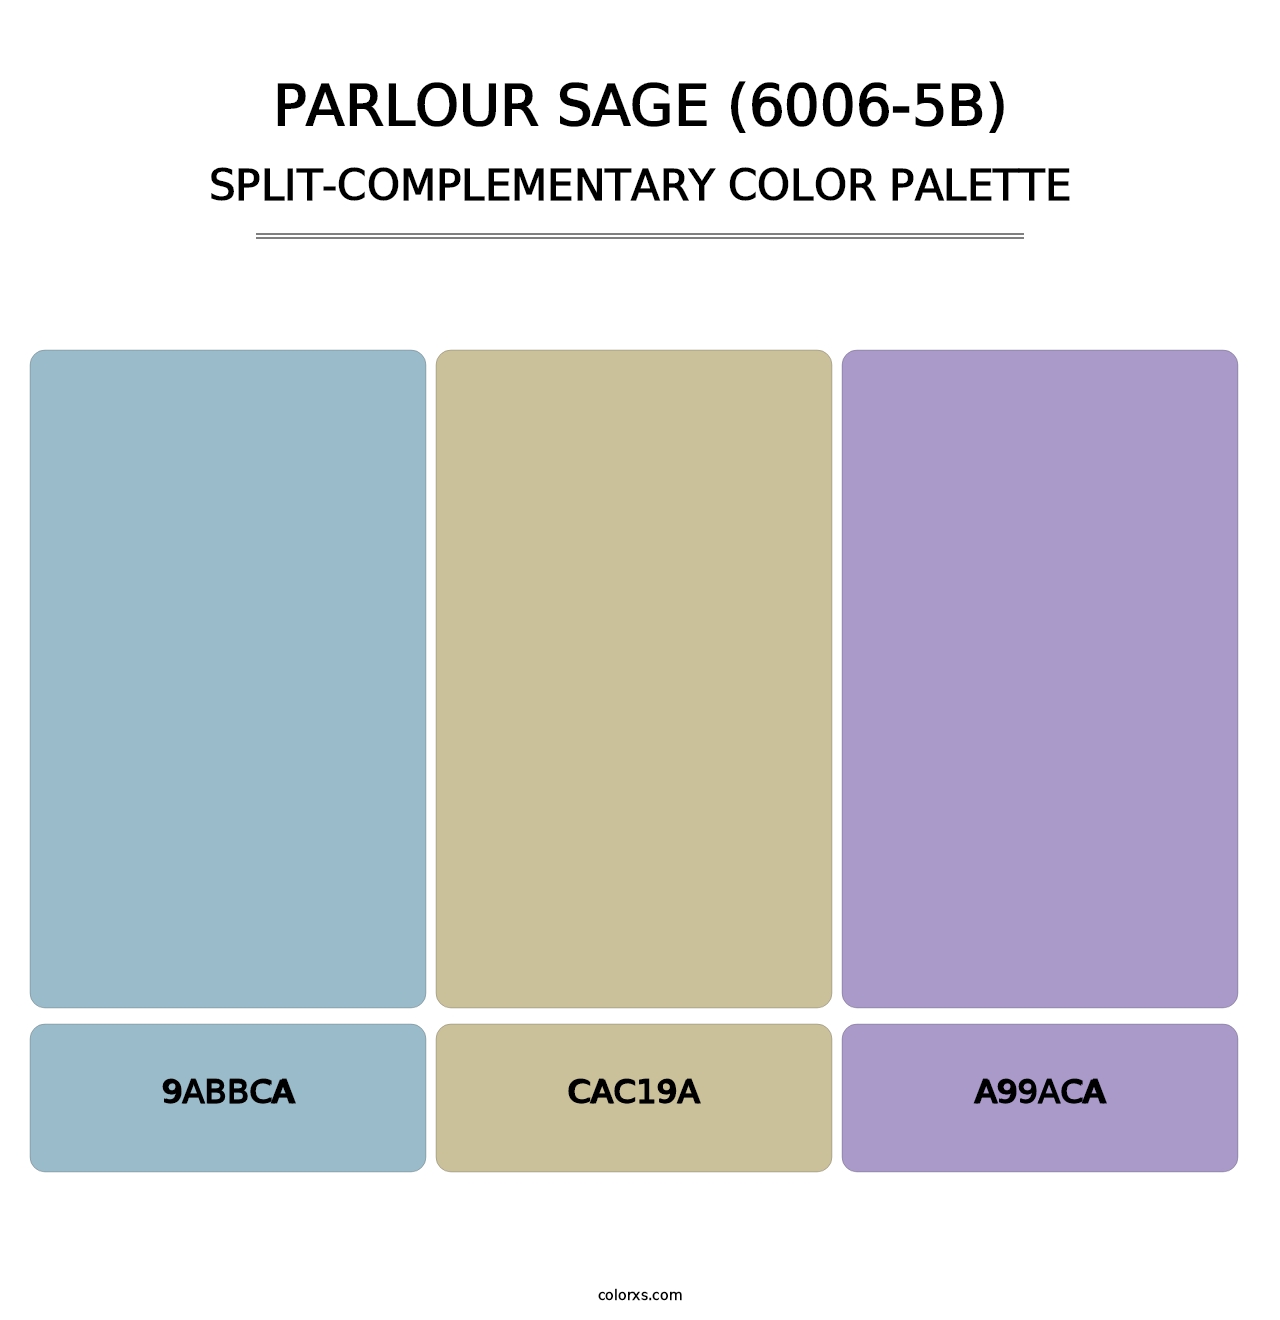 Parlour Sage (6006-5B) - Split-Complementary Color Palette